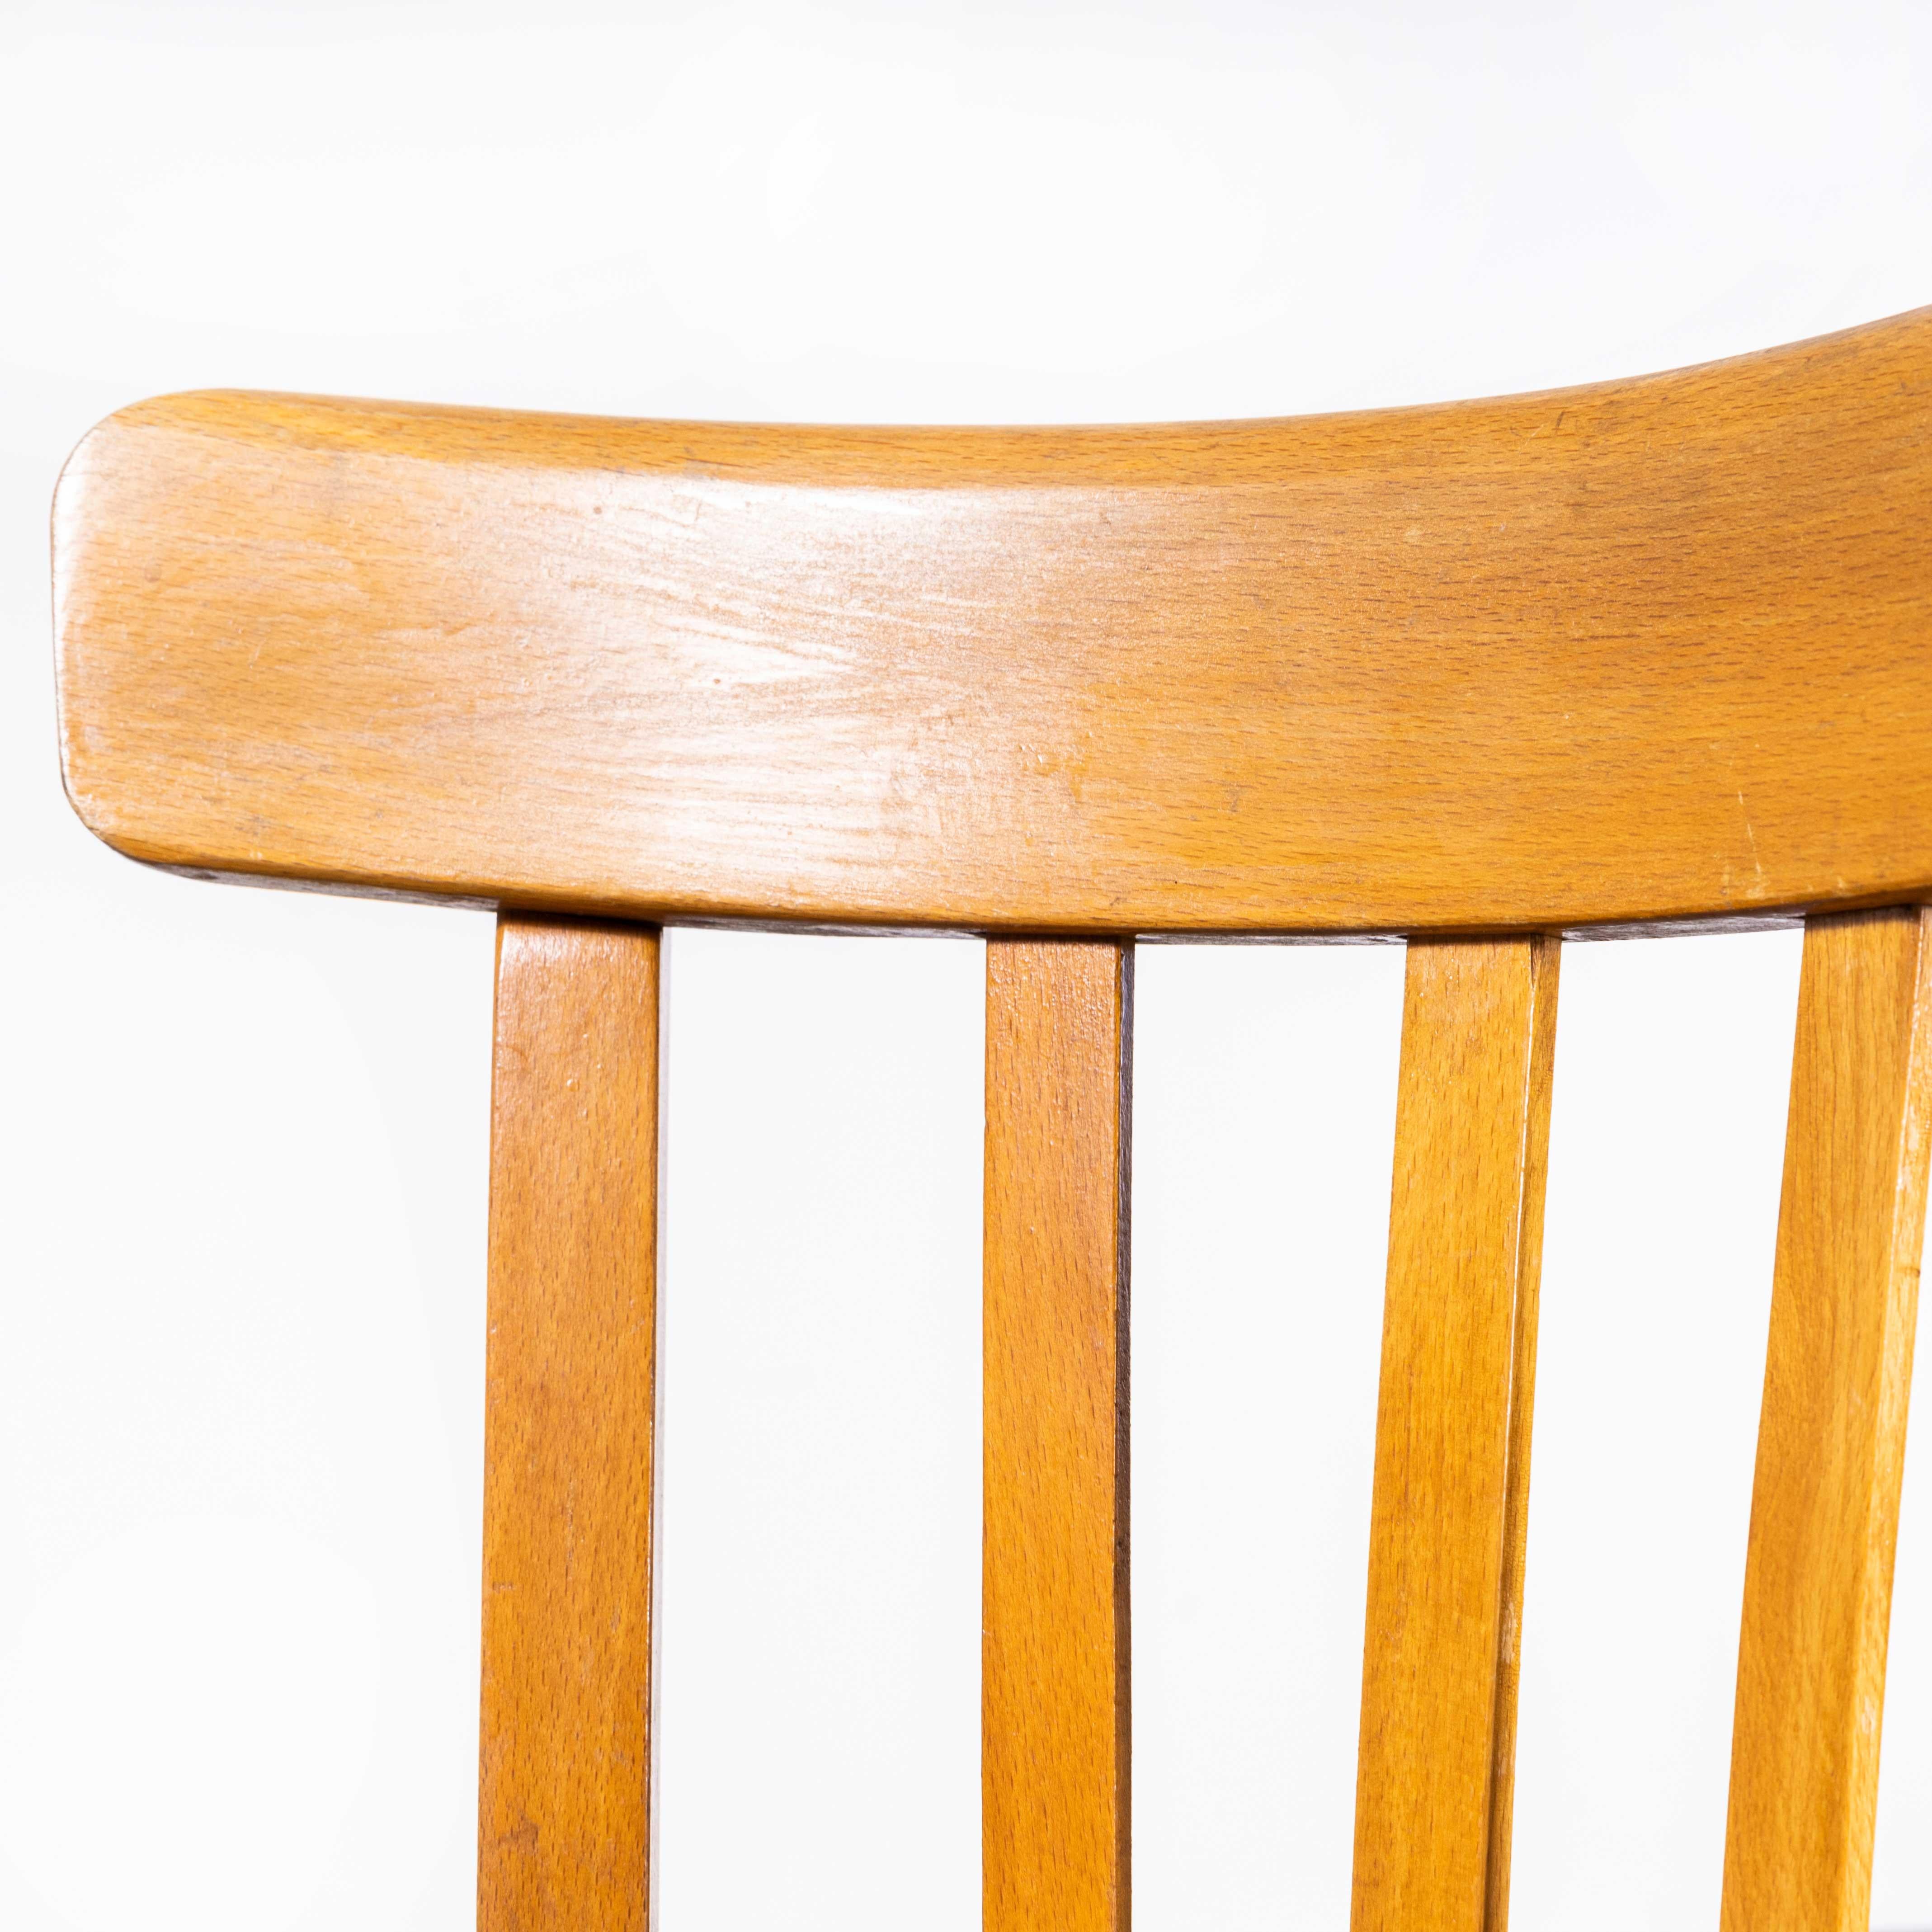 Chaise de salle à manger en bentwood en chêne miel Luterma des années 1950 - Lot de quatre
Chaise de salle à manger en bentwood Luterma Honey Oak des années 1950 - Lot de quatre. Le procédé de cintrage du hêtre à la vapeur pour créer des chaises